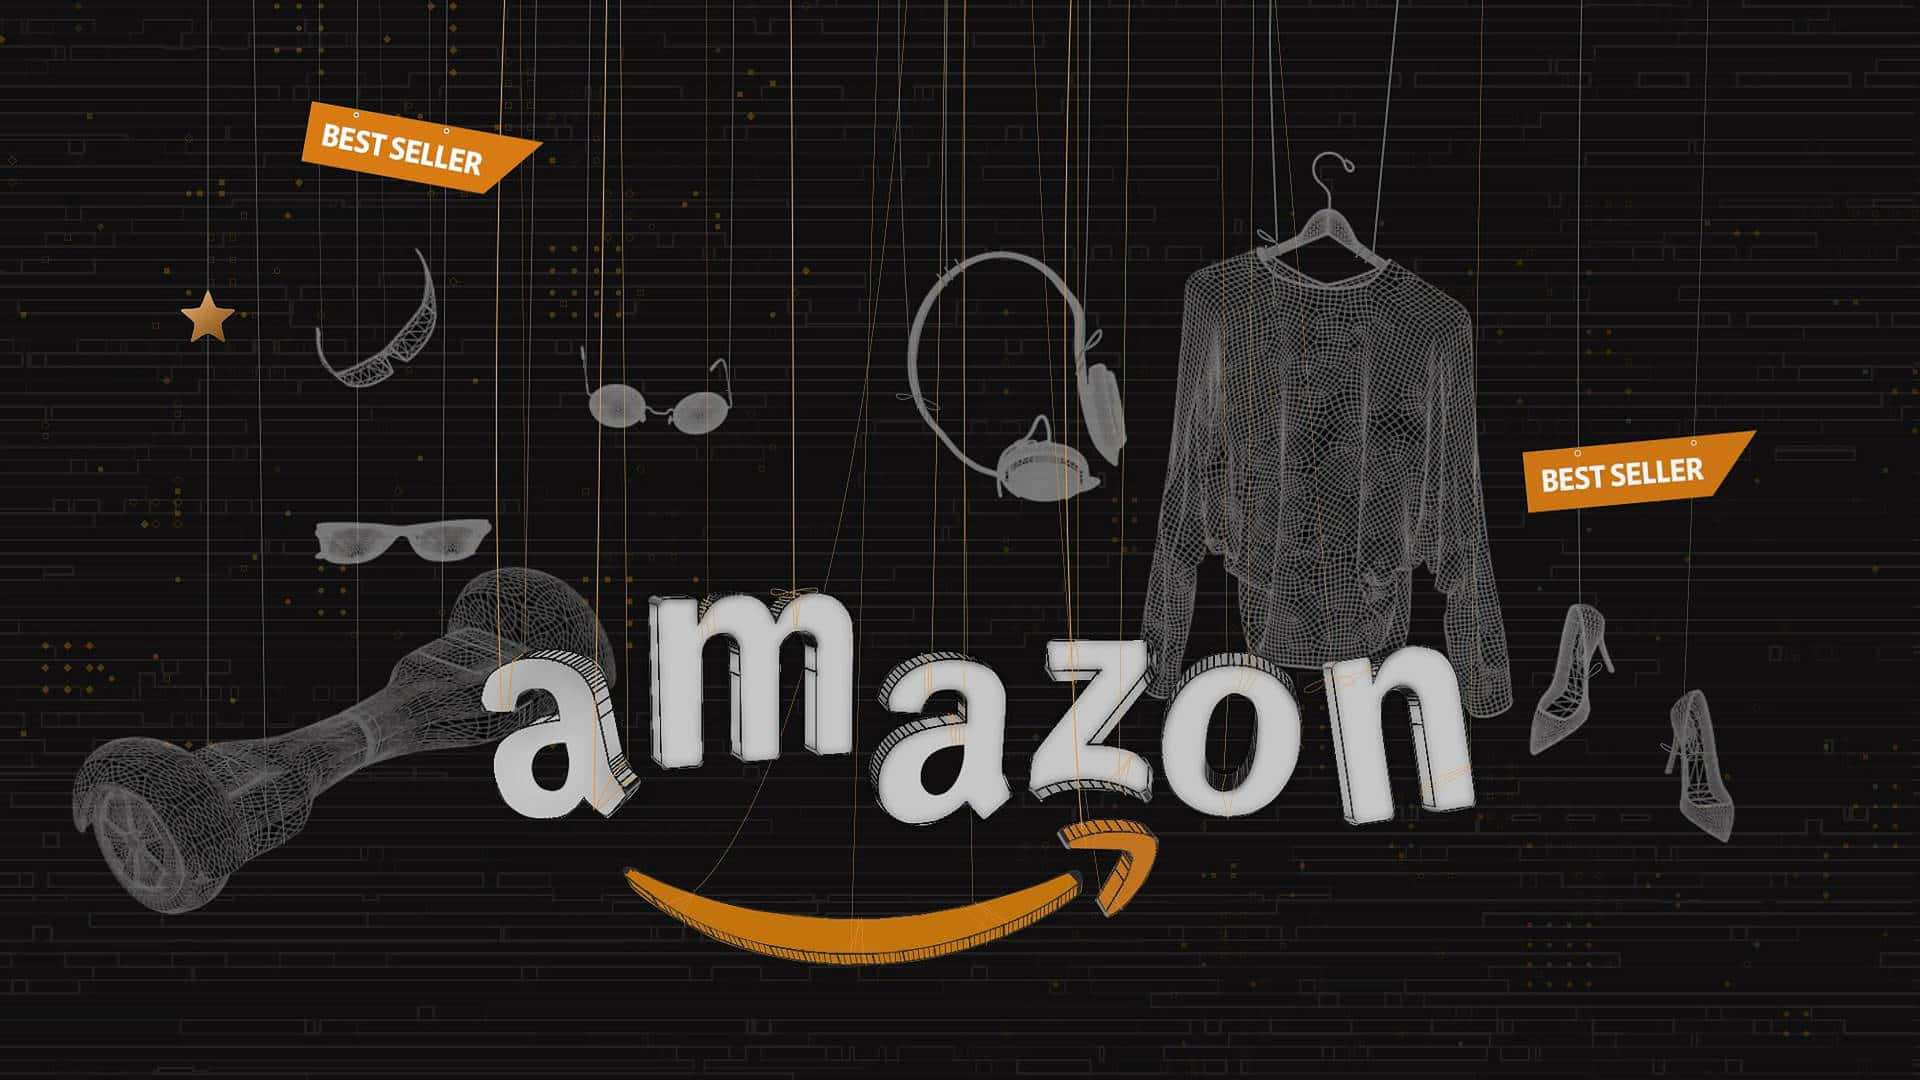 Scattodei Migliori Venditori Su Amazon Uk Sfondo